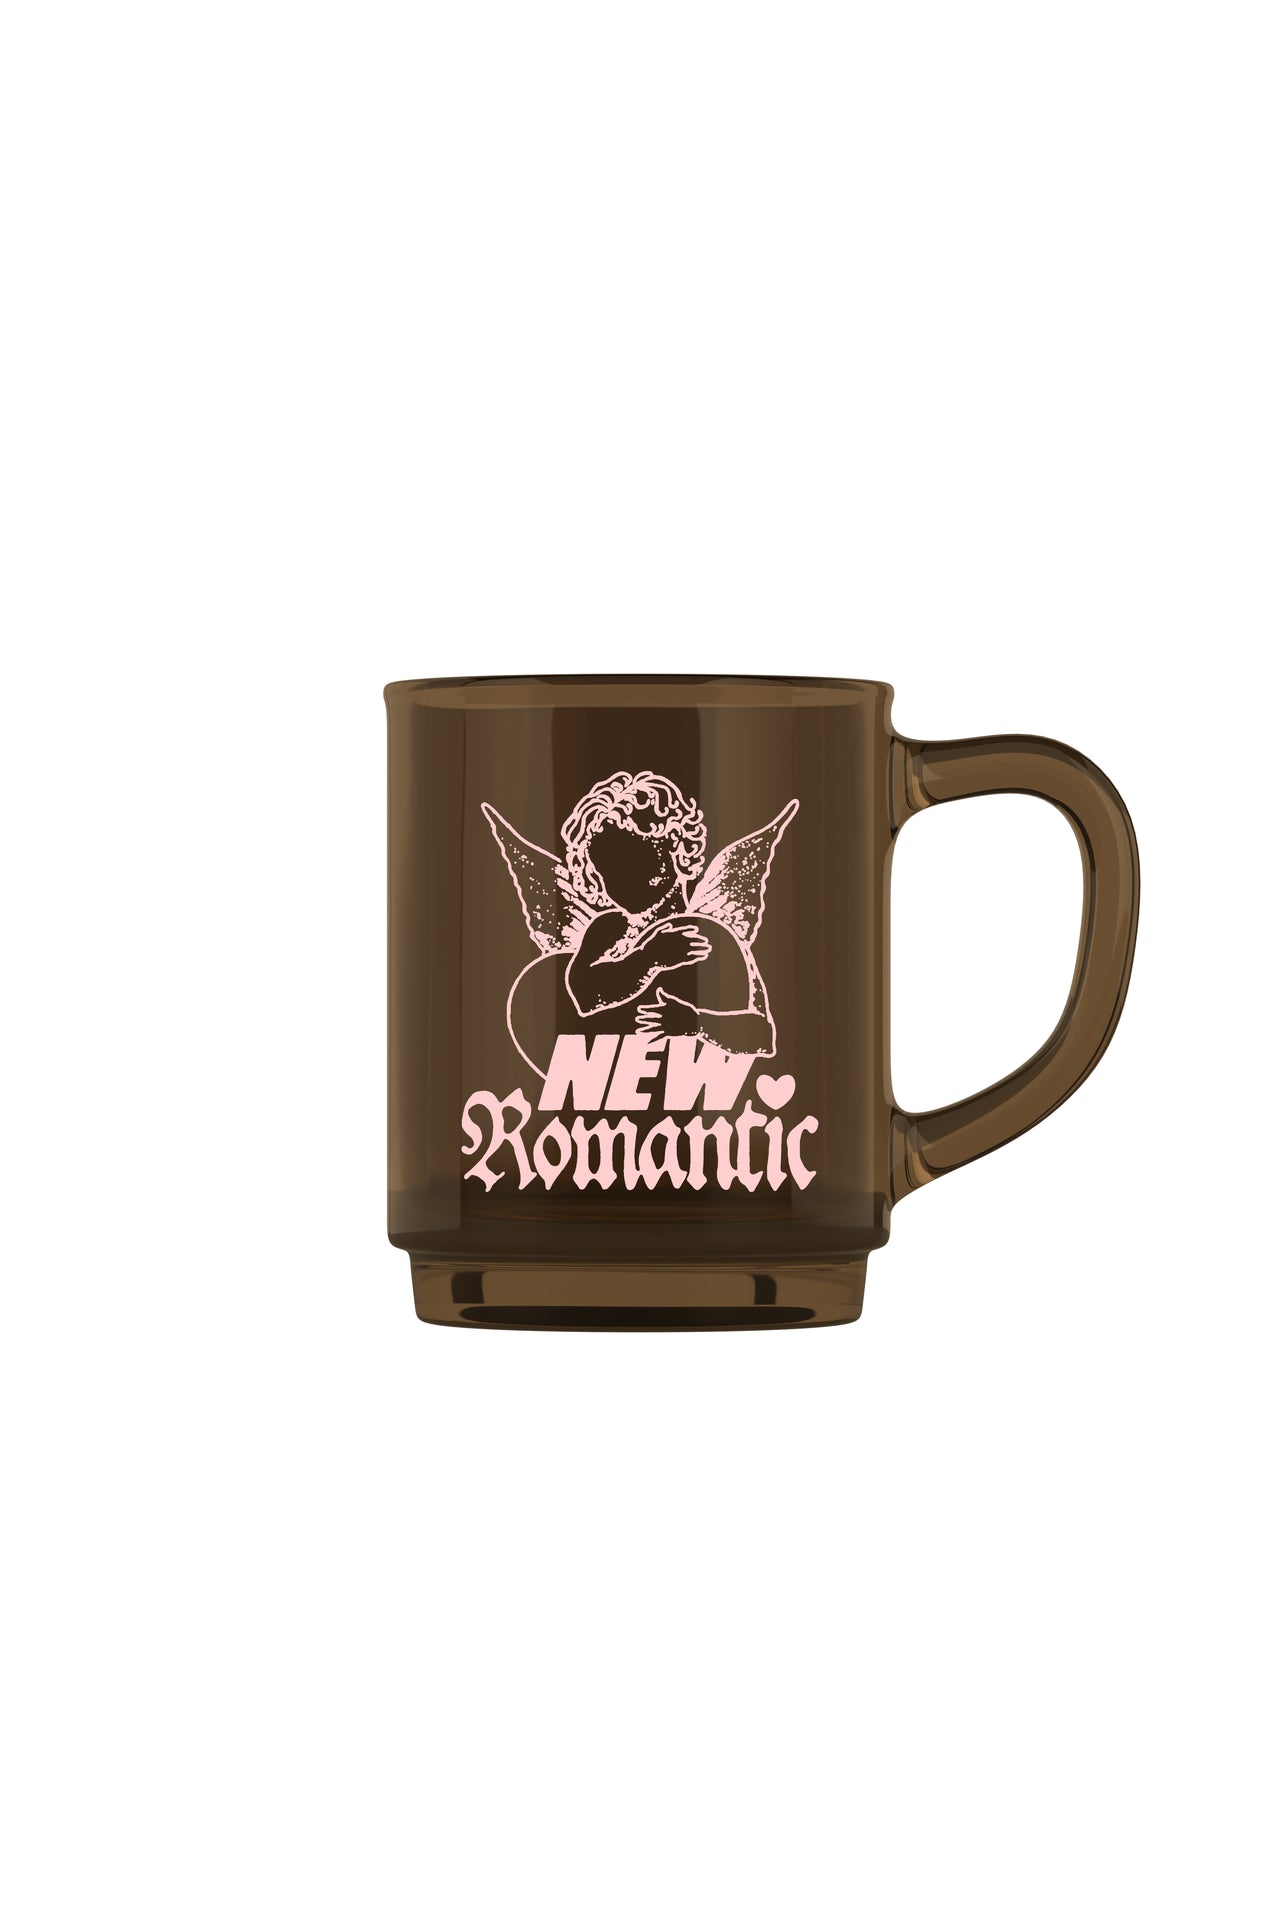 Romantic Mug